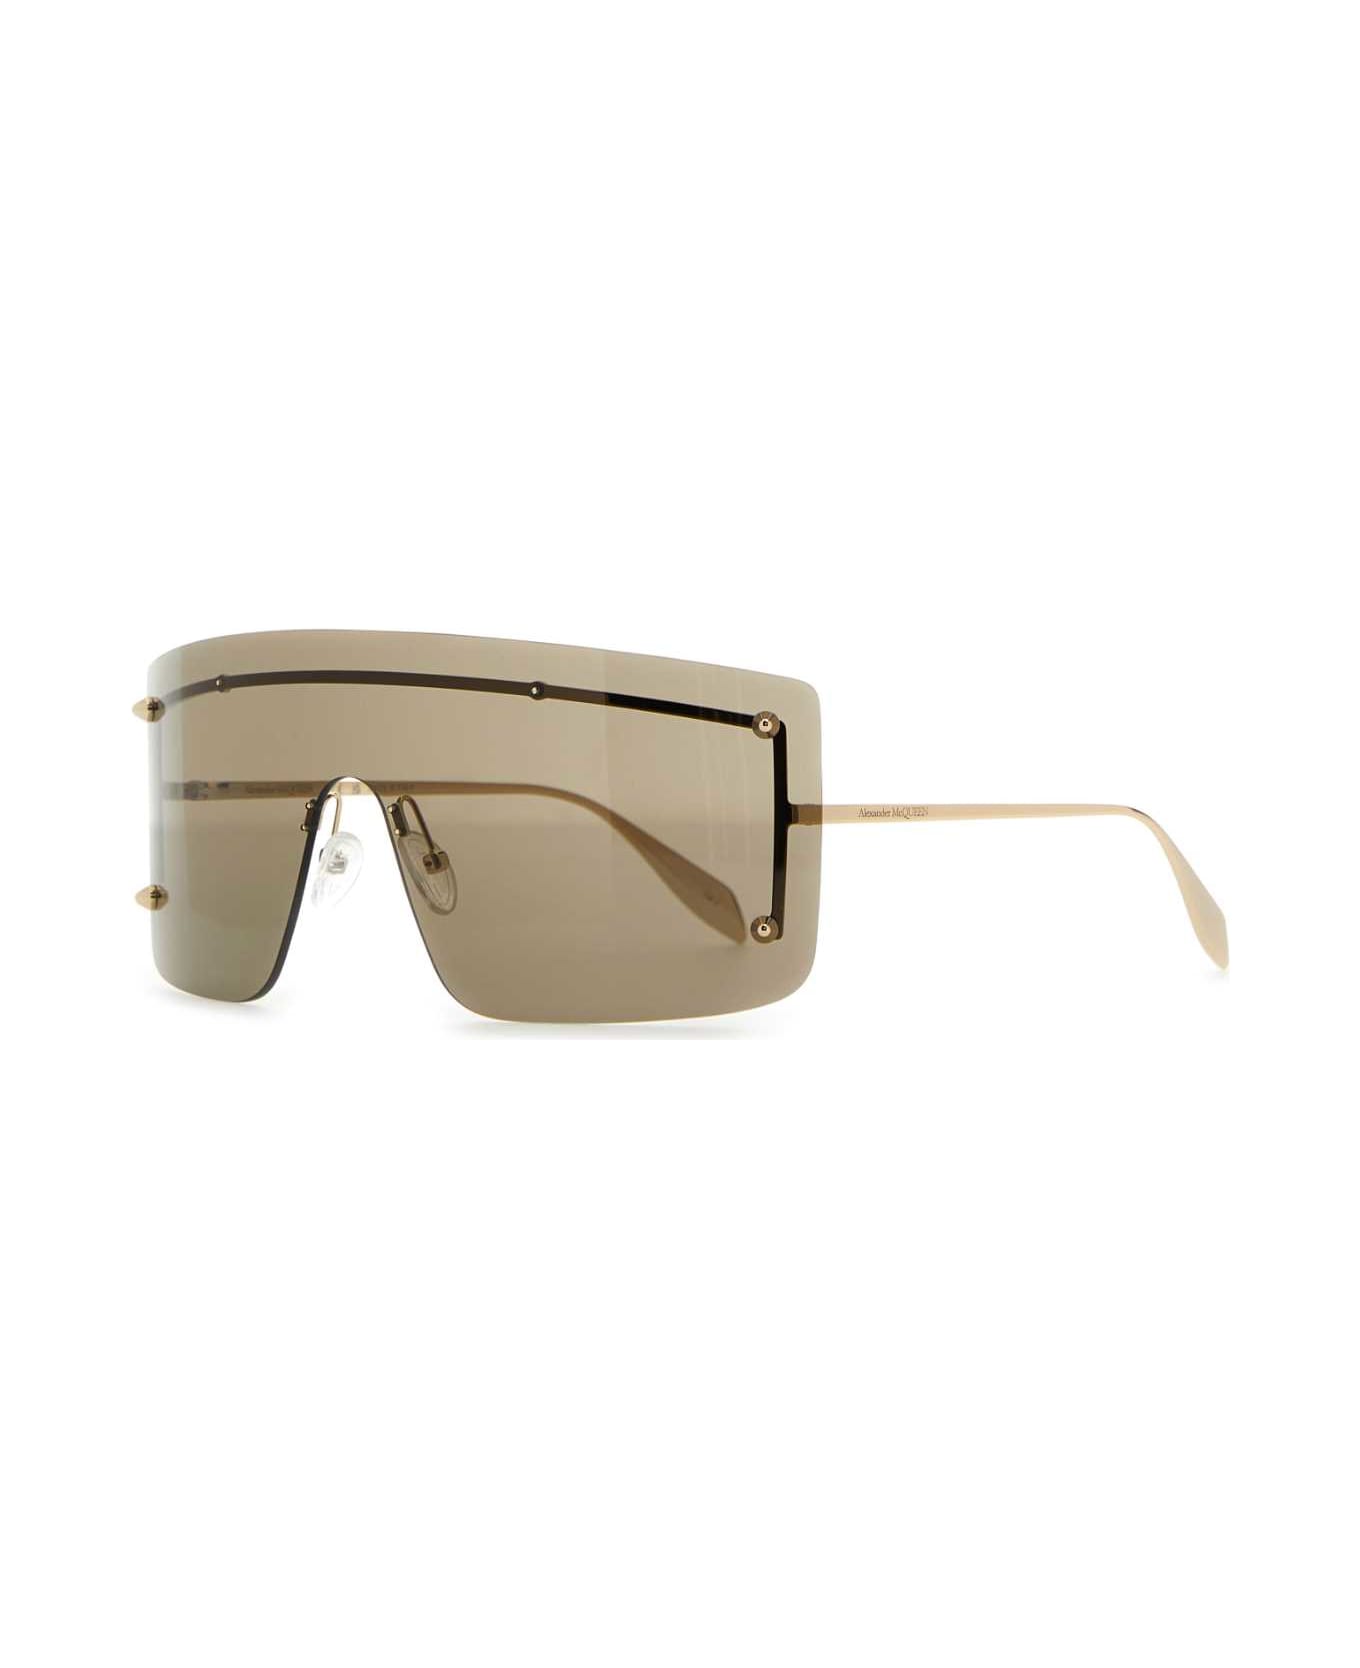 Alexander McQueen Gold Metal Spike Studs Sunglasses - GOLD-GOLD-BROWN